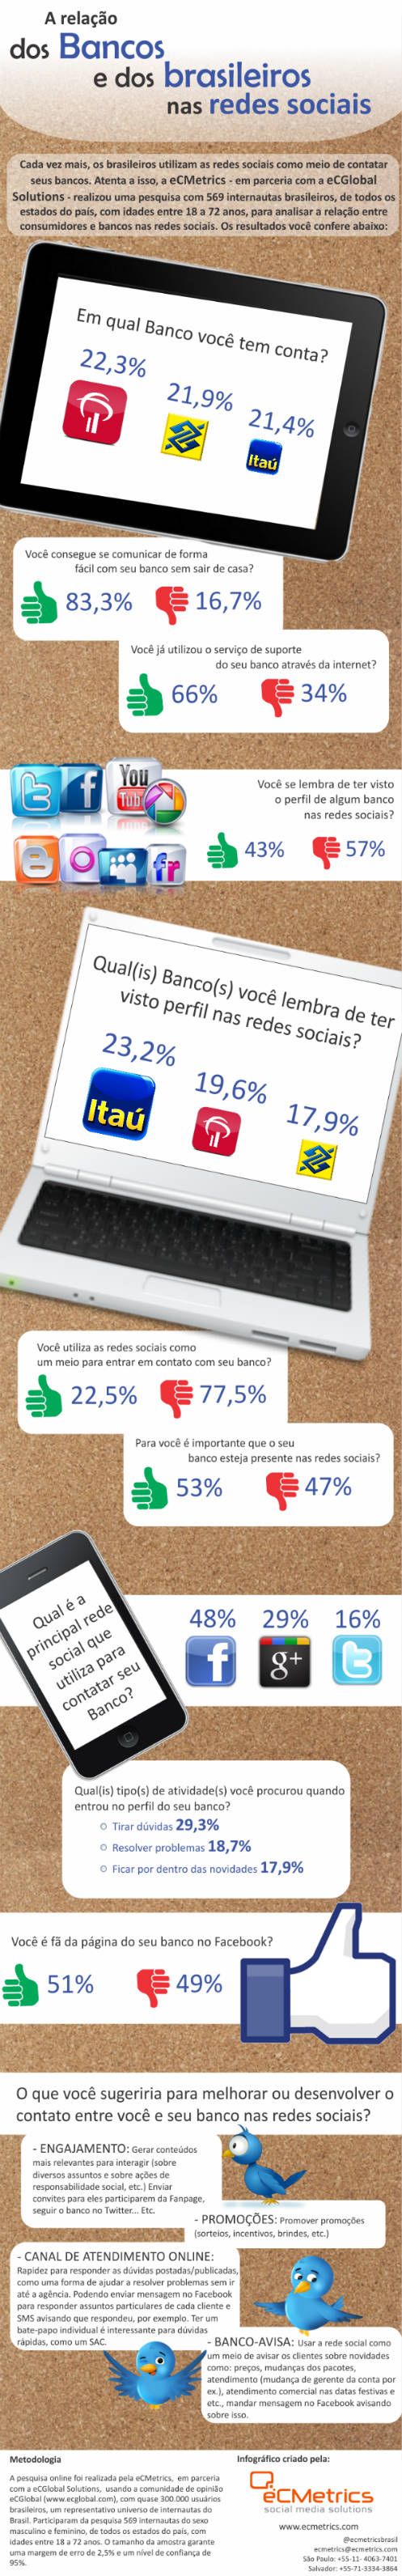 Brasileiro-ainda-usa-pouco-as-redes-sociais-para-falar-com-bancos